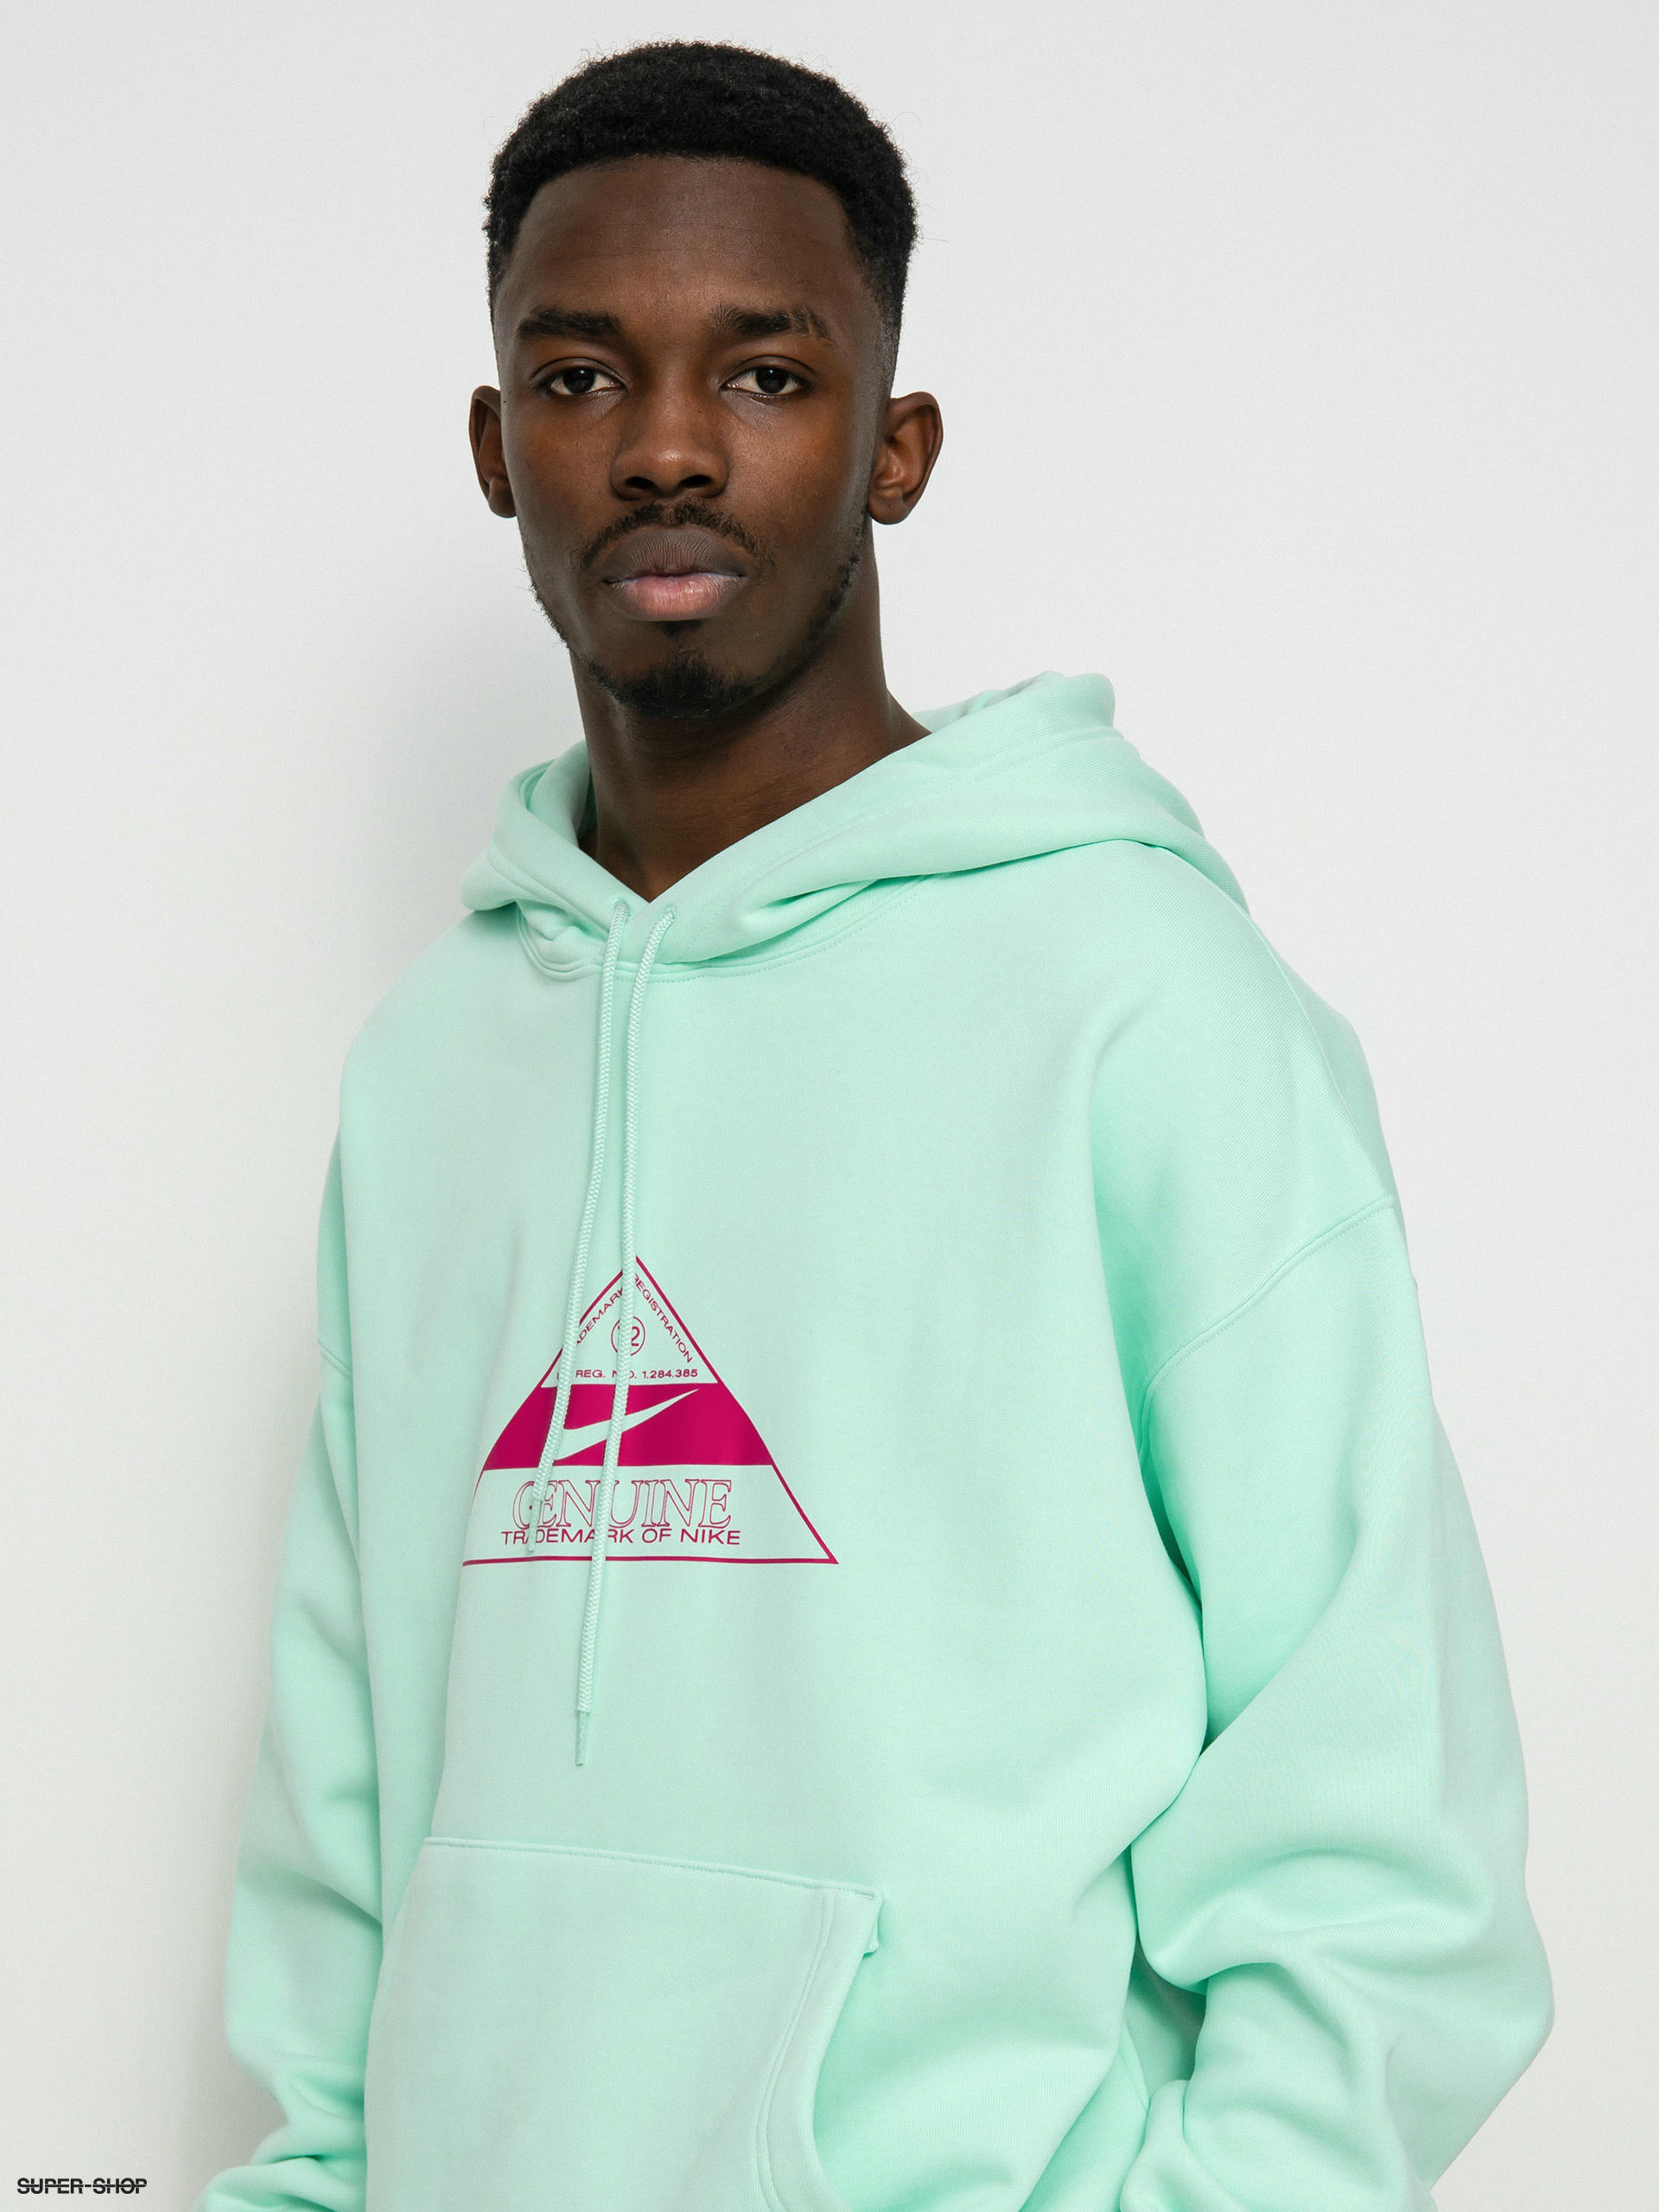 nike sb hoodie green pink